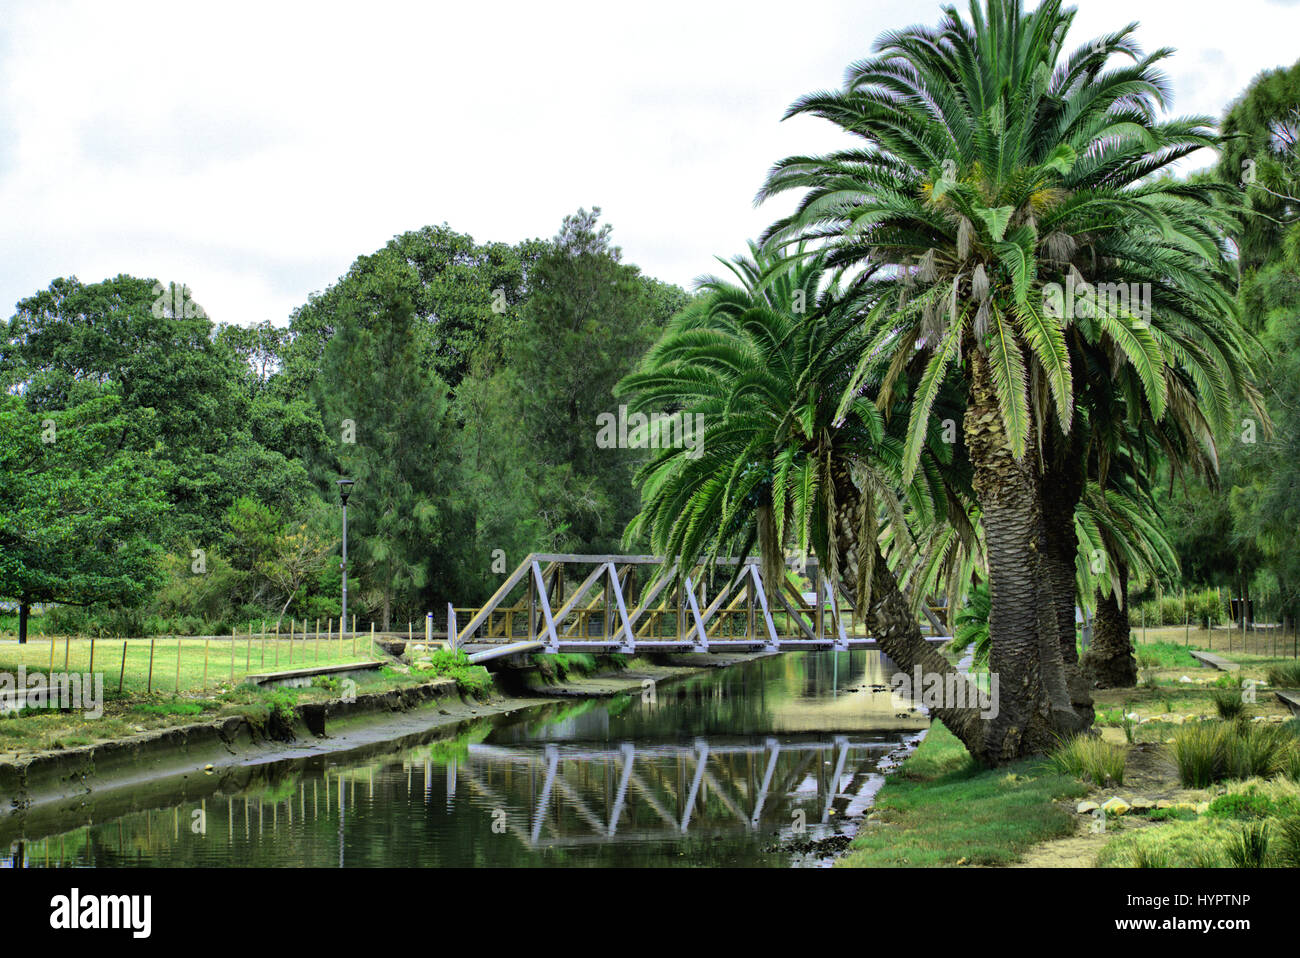 Il paesaggio del parco con alberi di palma e il ponte in legno sul fiume di acqua. Paesaggio australiano. Foto Stock